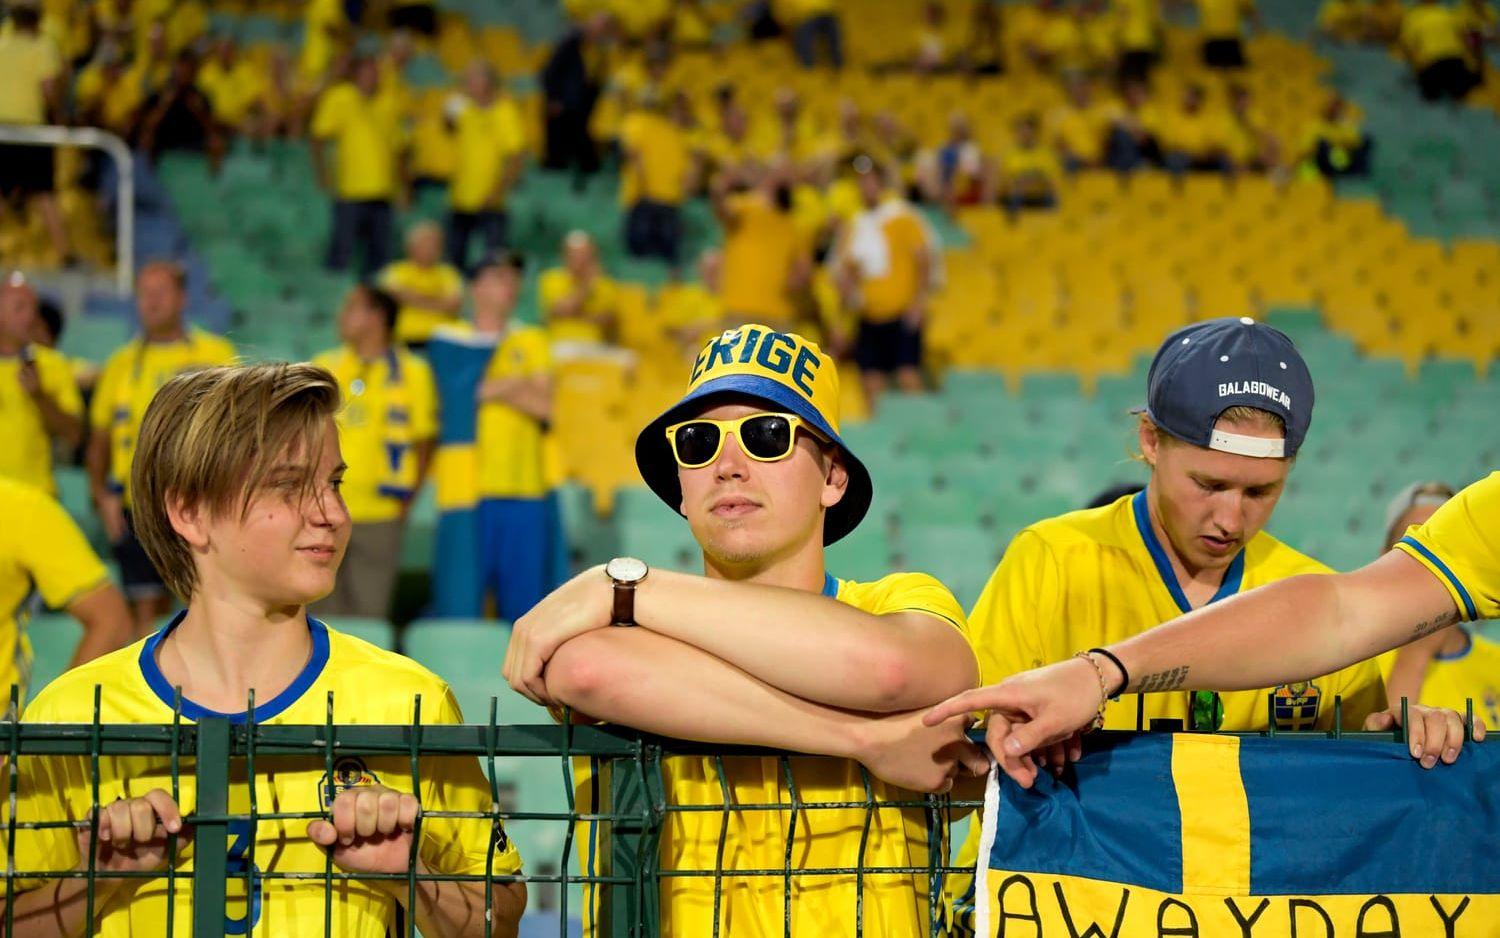 De svenska fansen är på plats för att stötta landslaget.Bild: Bildbyrån
